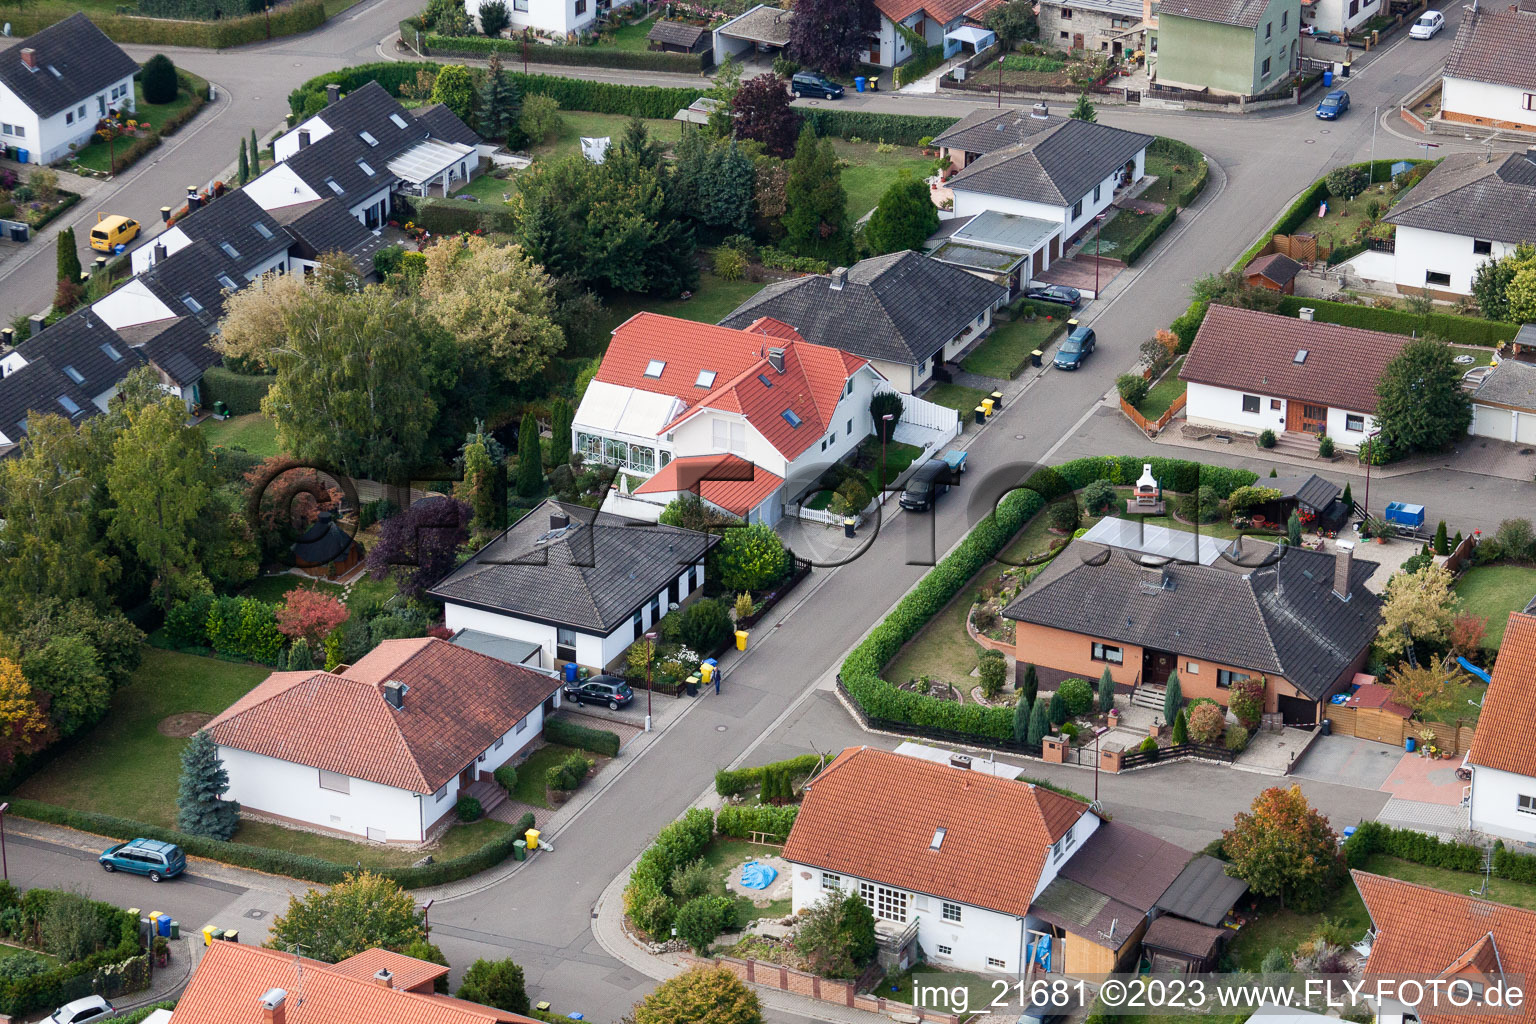 Eppelsheim im Bundesland Rheinland-Pfalz, Deutschland aus der Luft betrachtet